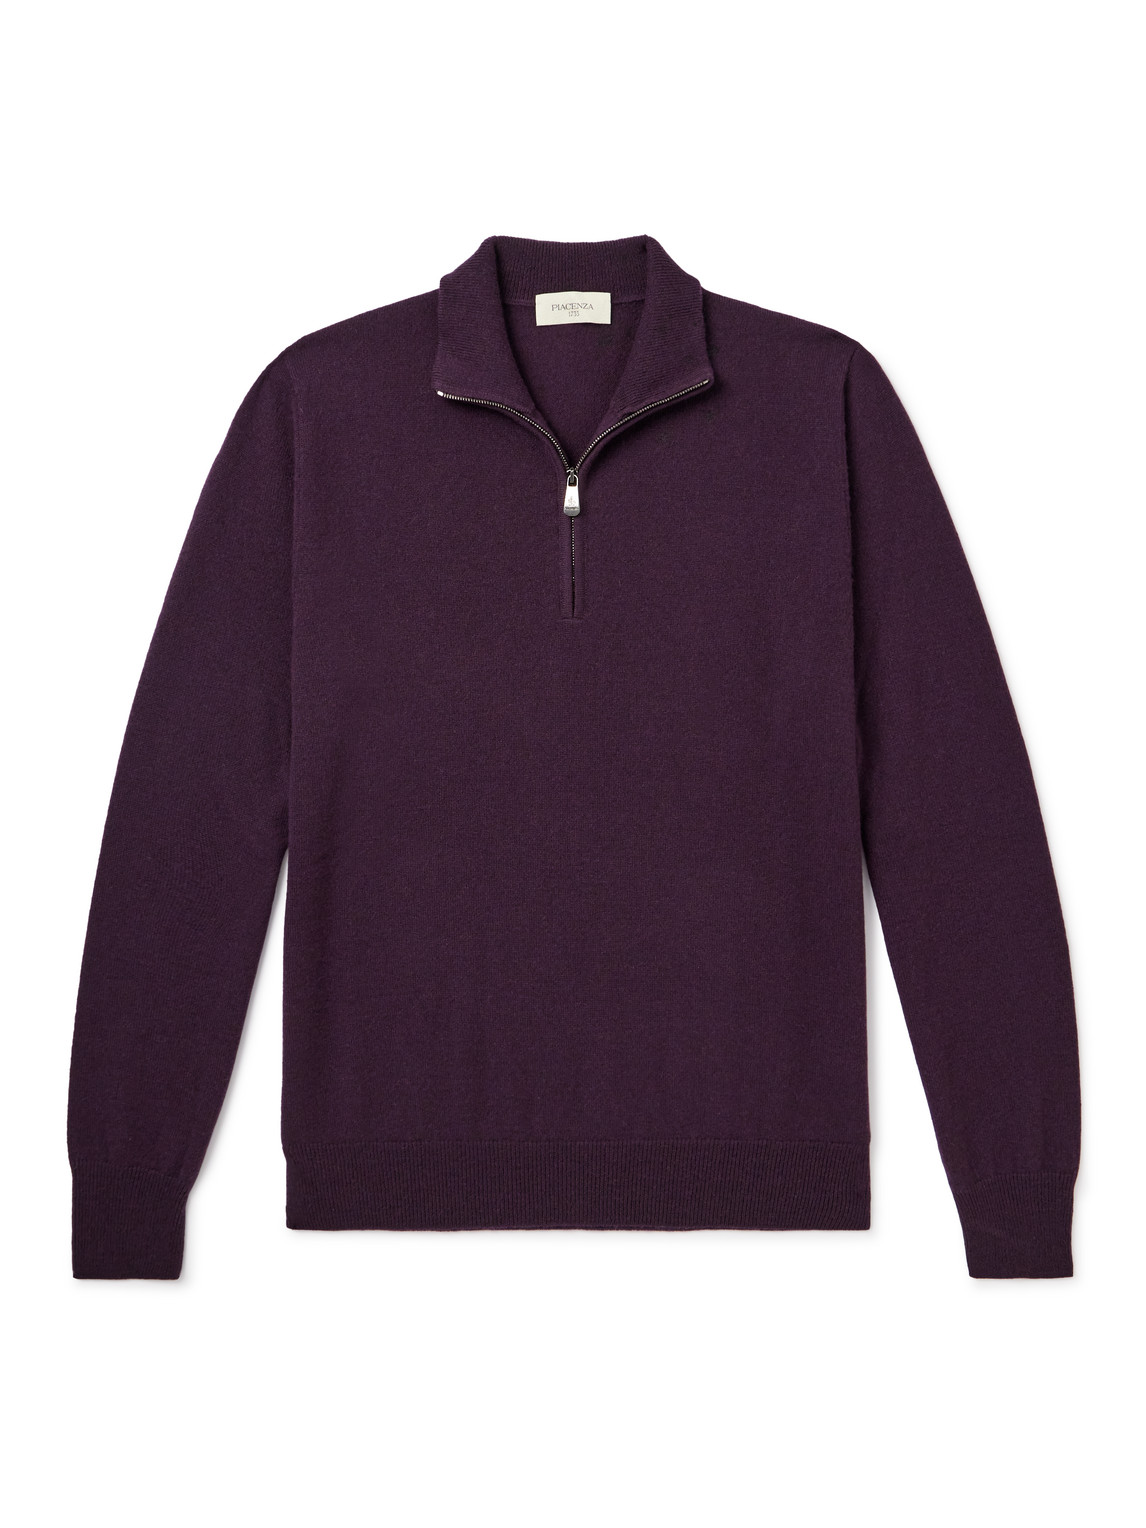 Lupetto Cashmere Half-Zip Sweater